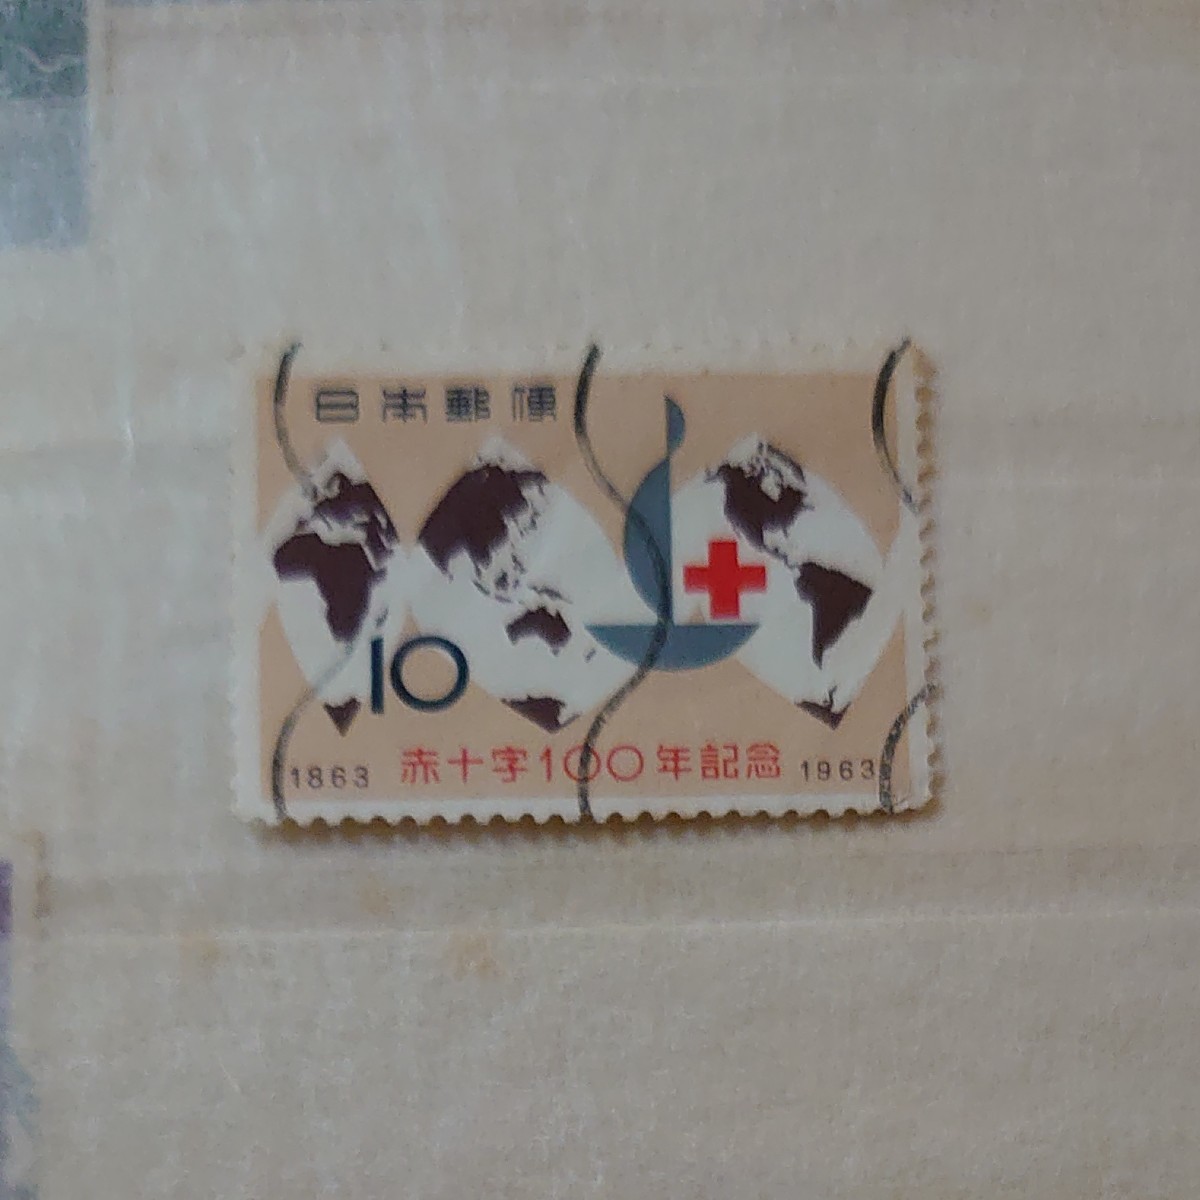 記念切手(使用済み含む) 第18回東京五輪記念切手(1964) 札幌冬季五輪記念切手(1972) 琉球郵便切手 